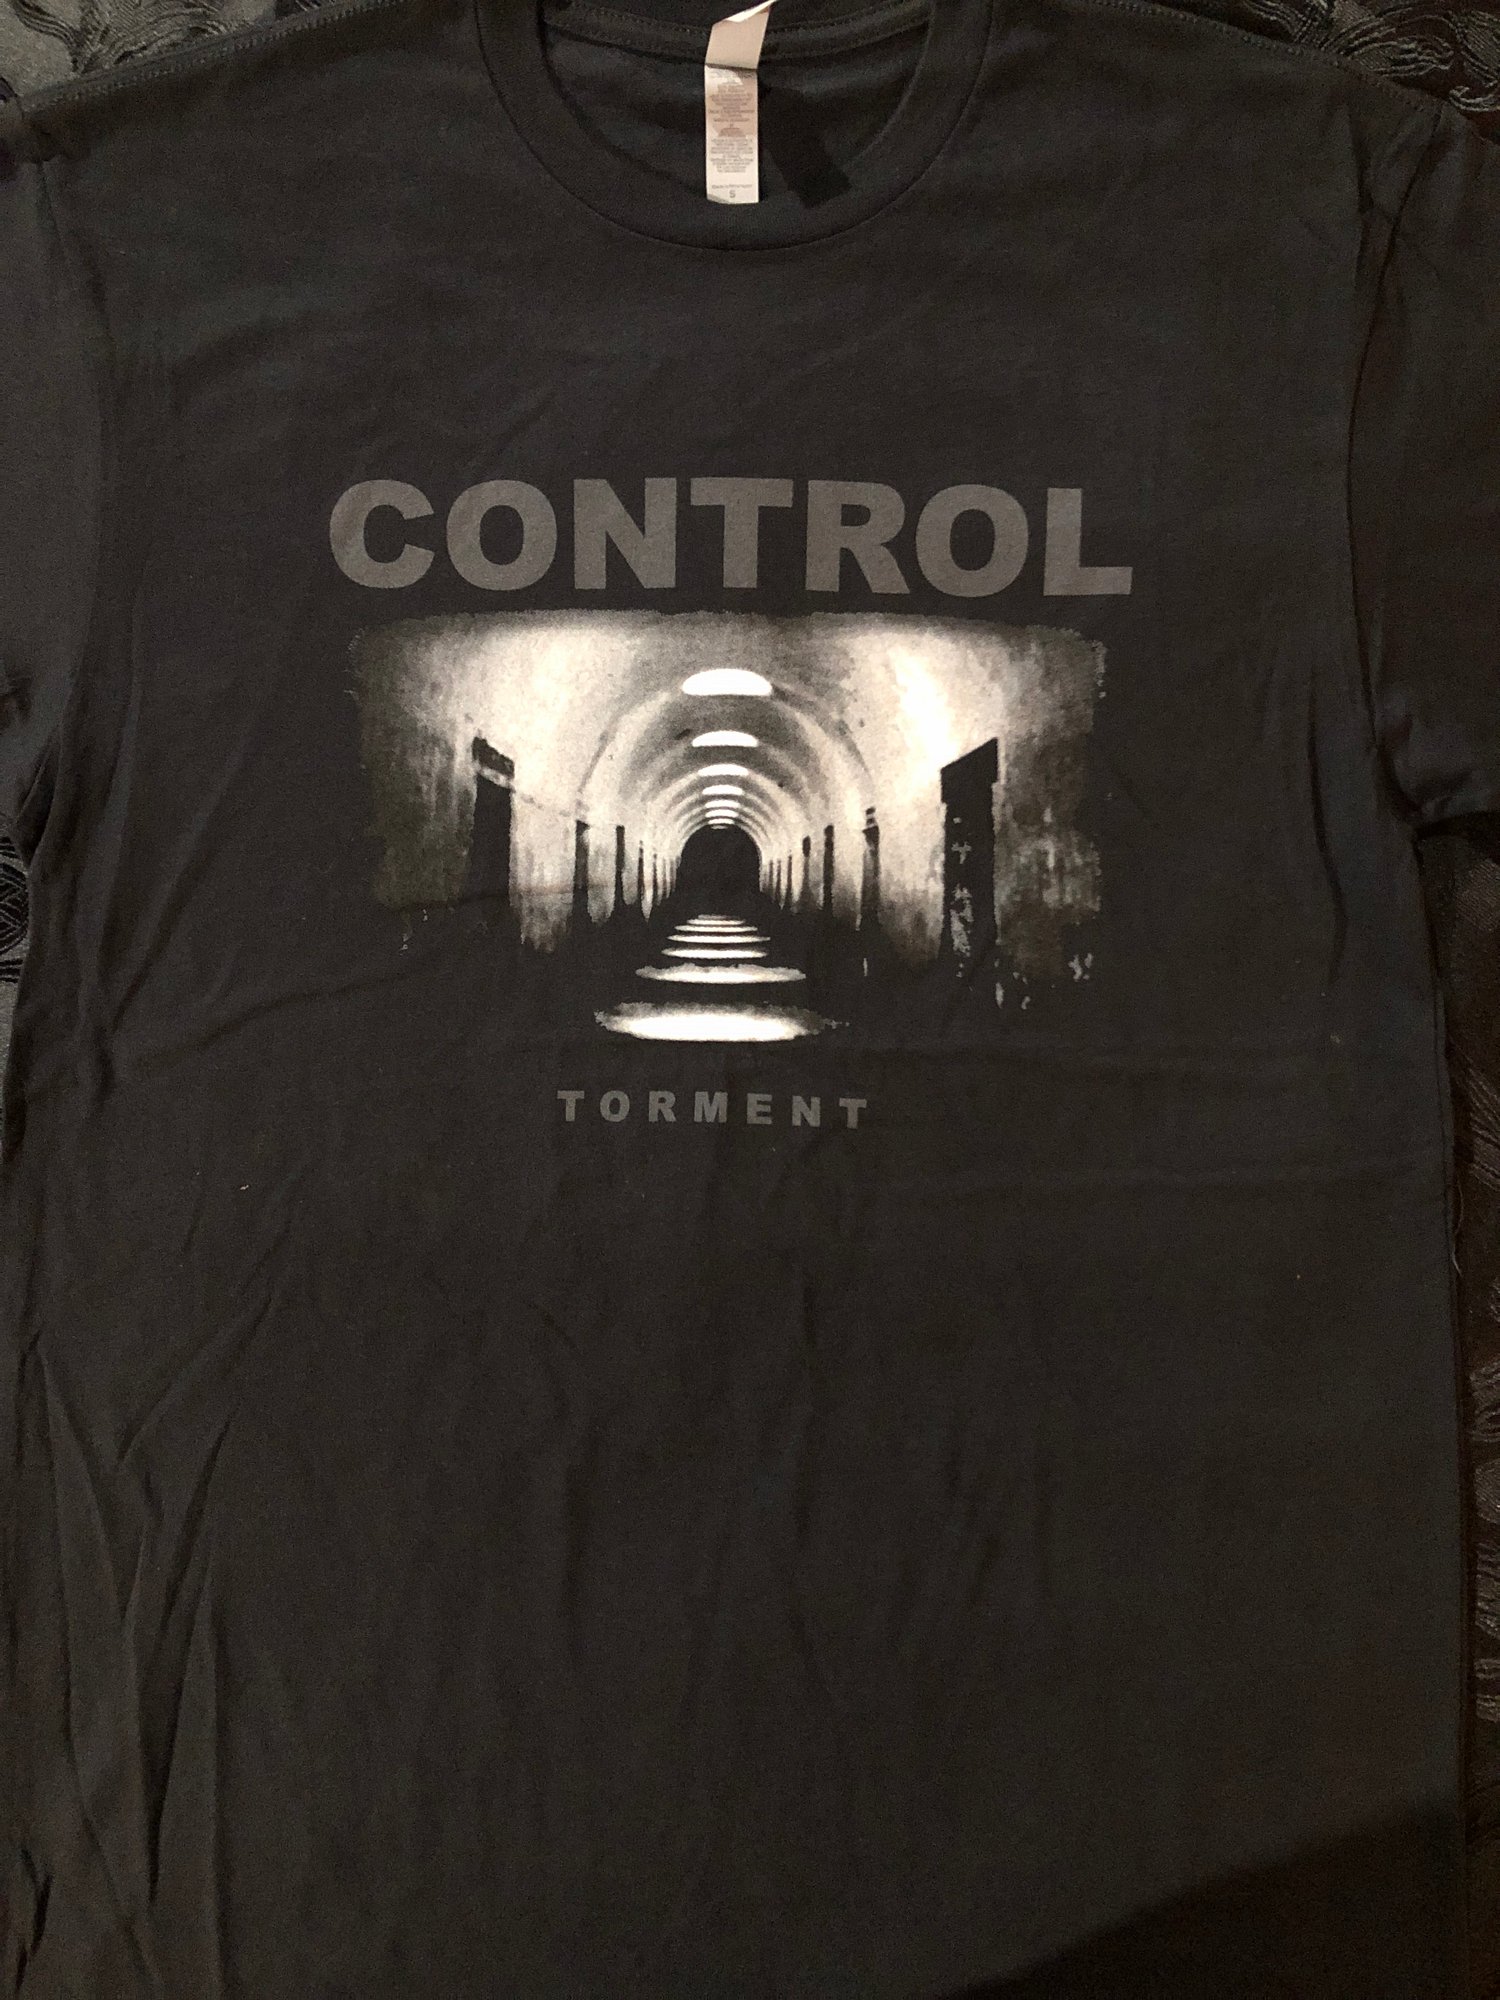 Control - Torment Shirt